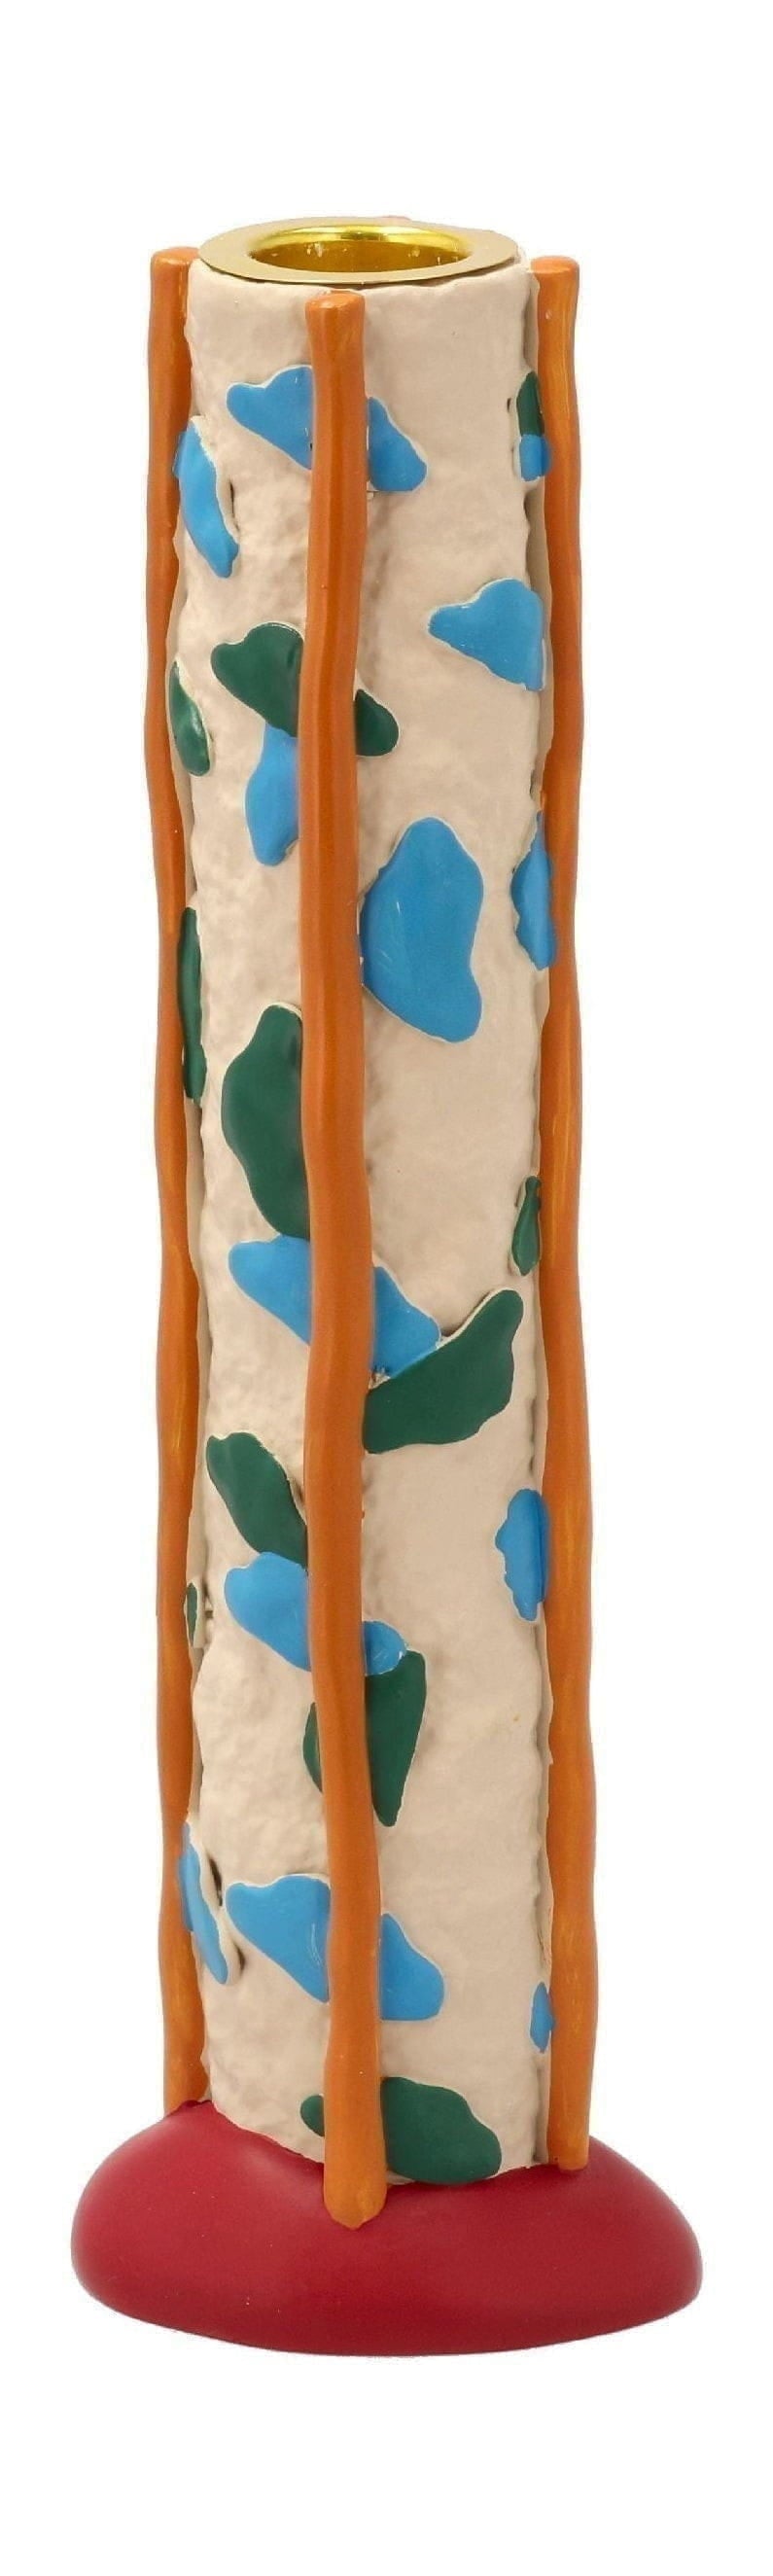 Kolekcja Villa Styles Candle Holder z kropkami, zielony/niebieski